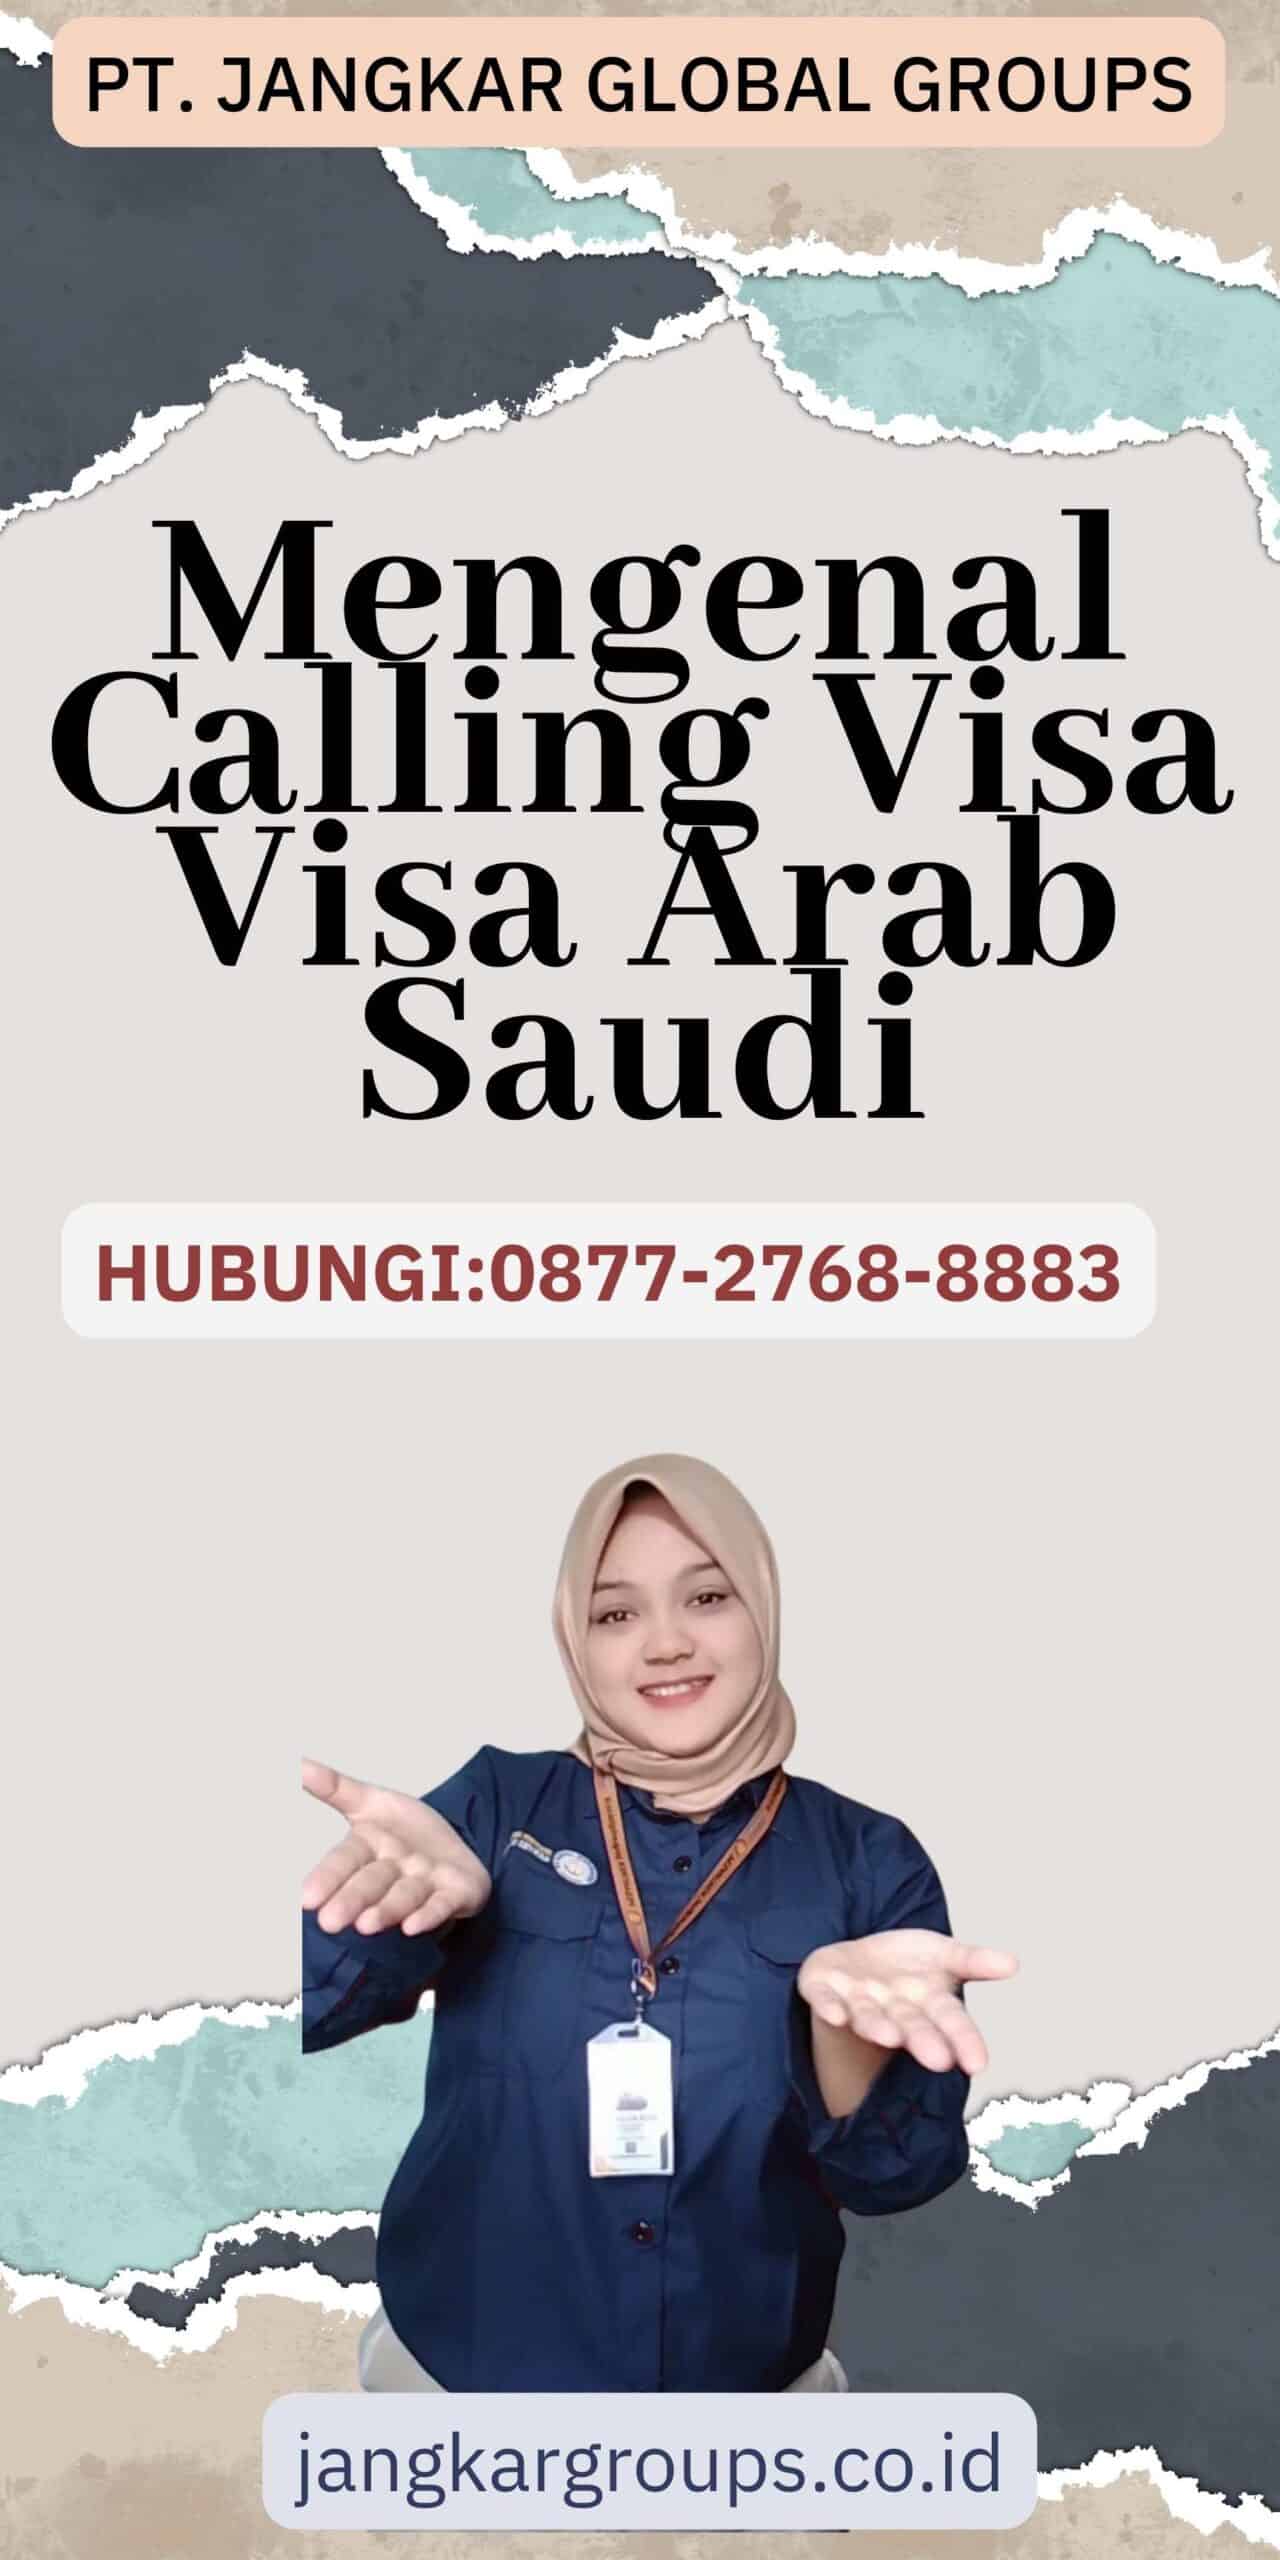 Mengenal Calling Visa Visa Arab Saudi